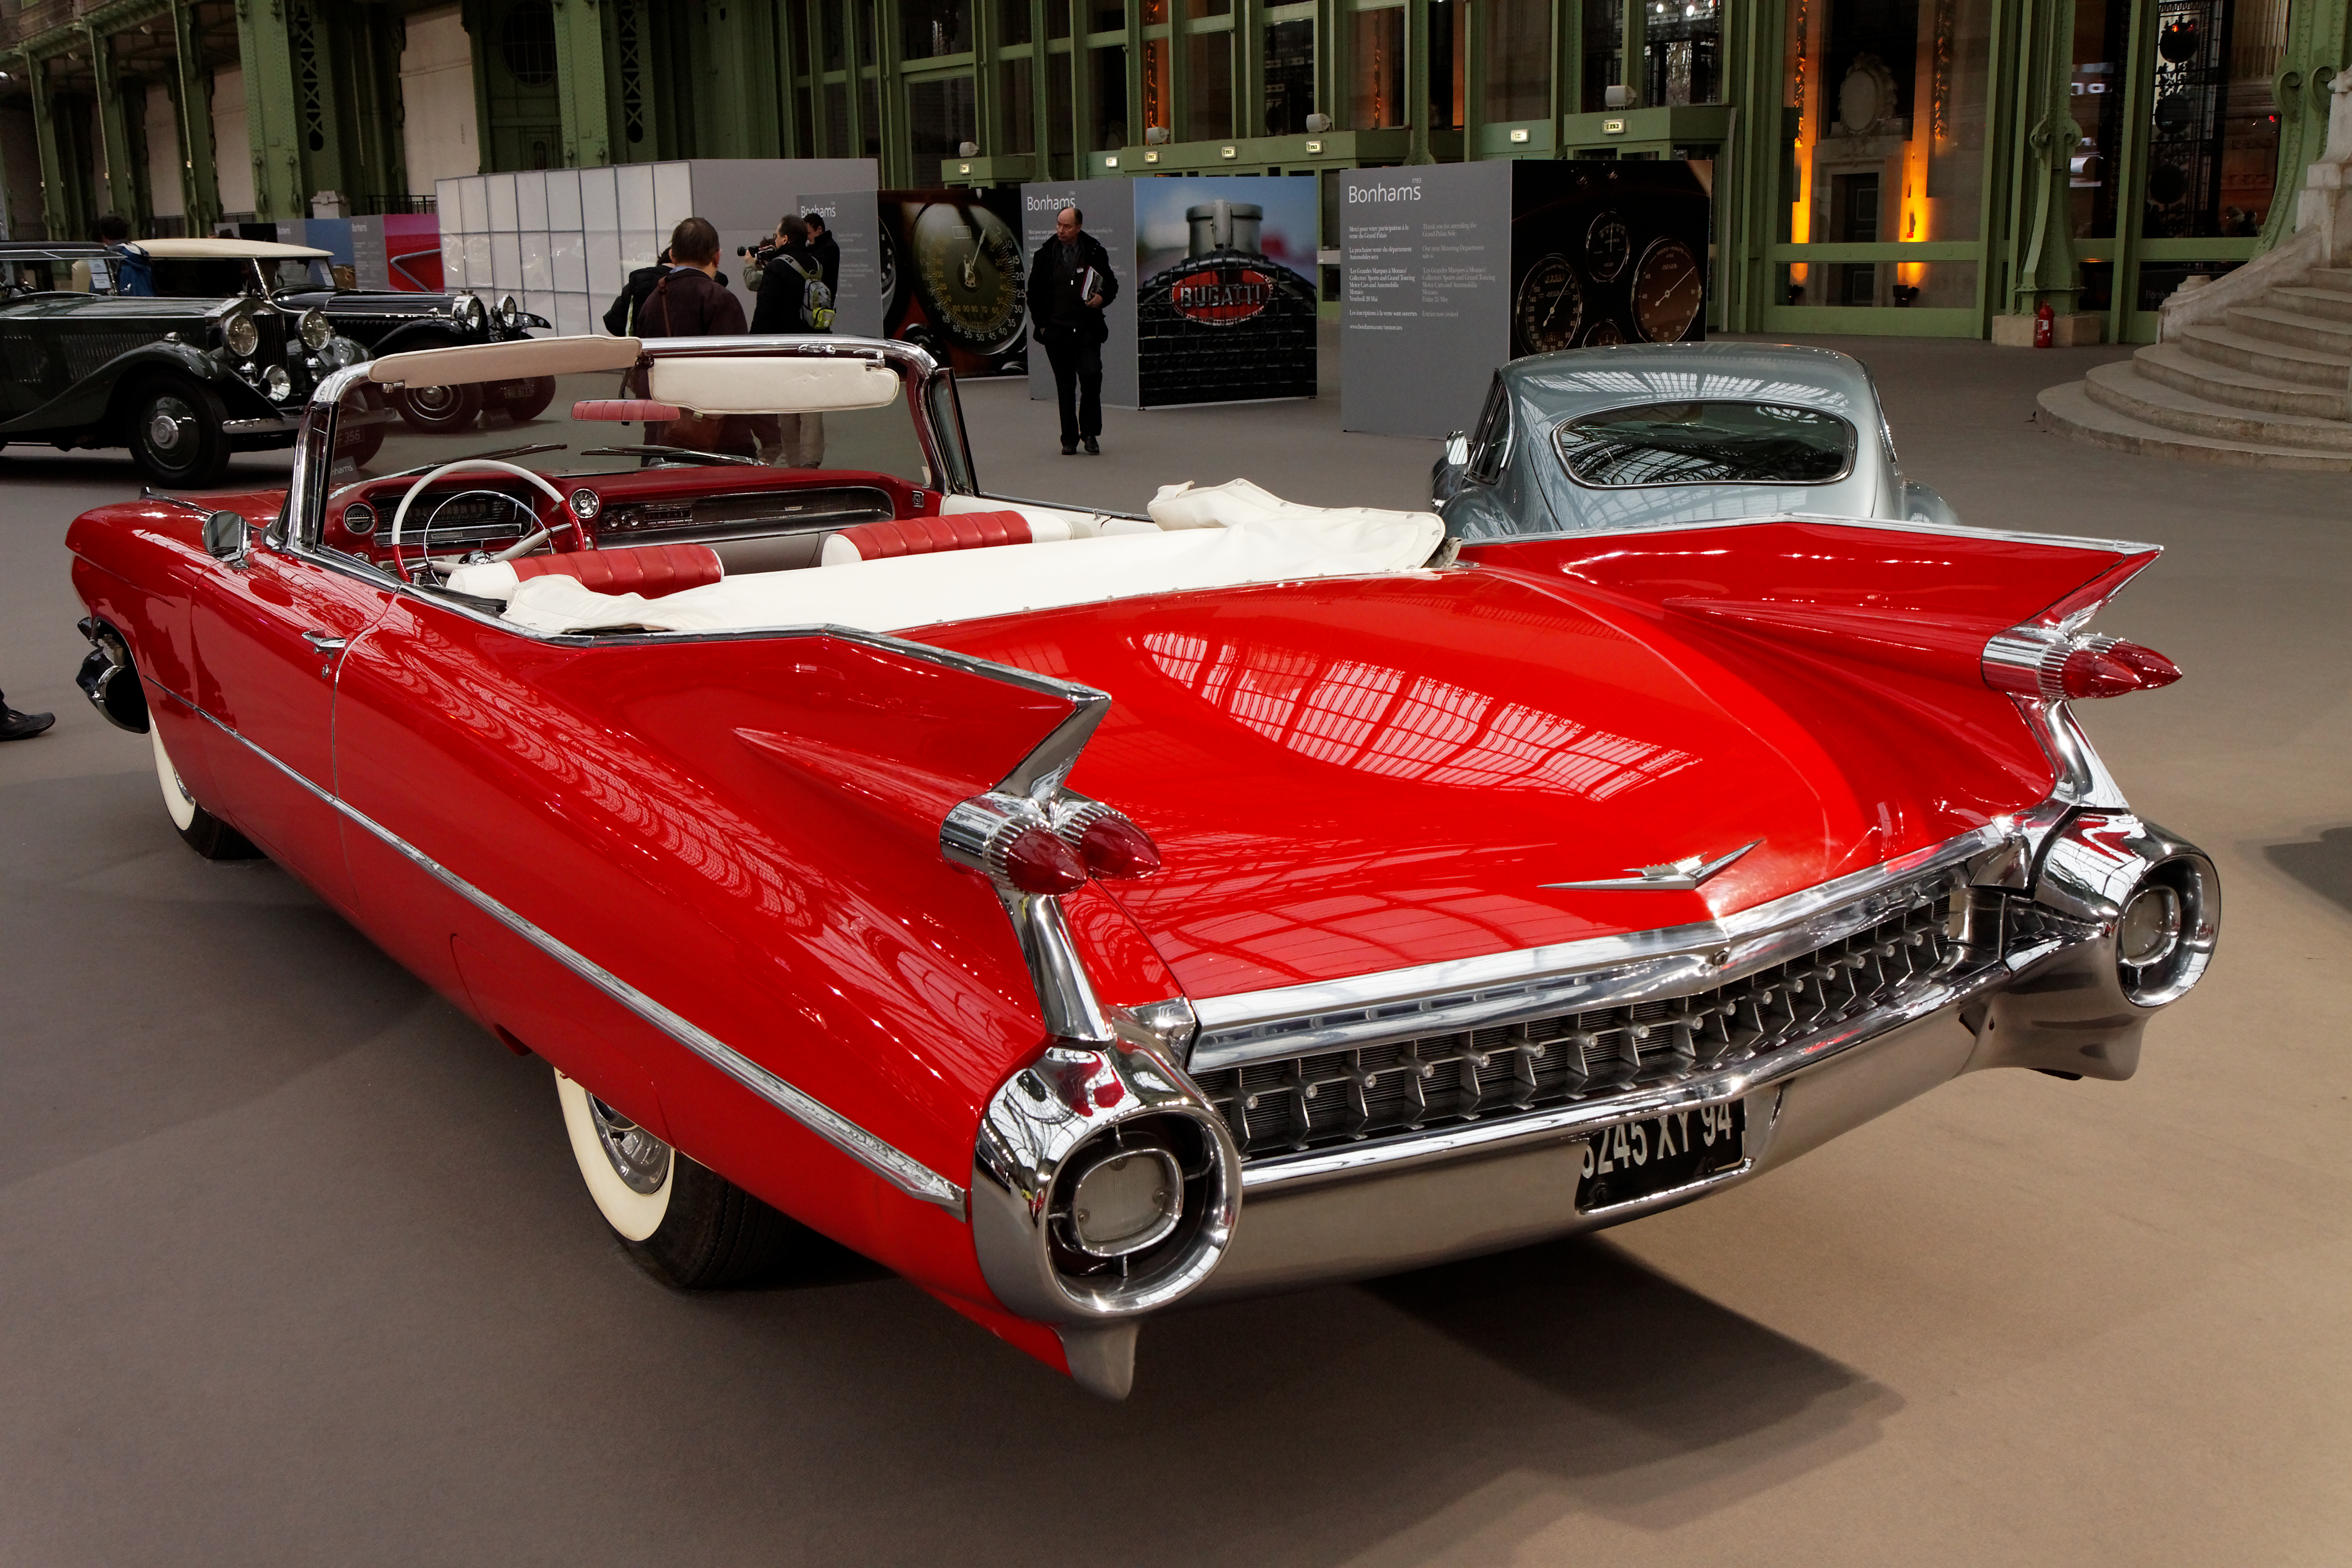 110 ans de l'automobile au Grand Palais - Cadillac Series 62 Coupe DeVille - 1959 - 008